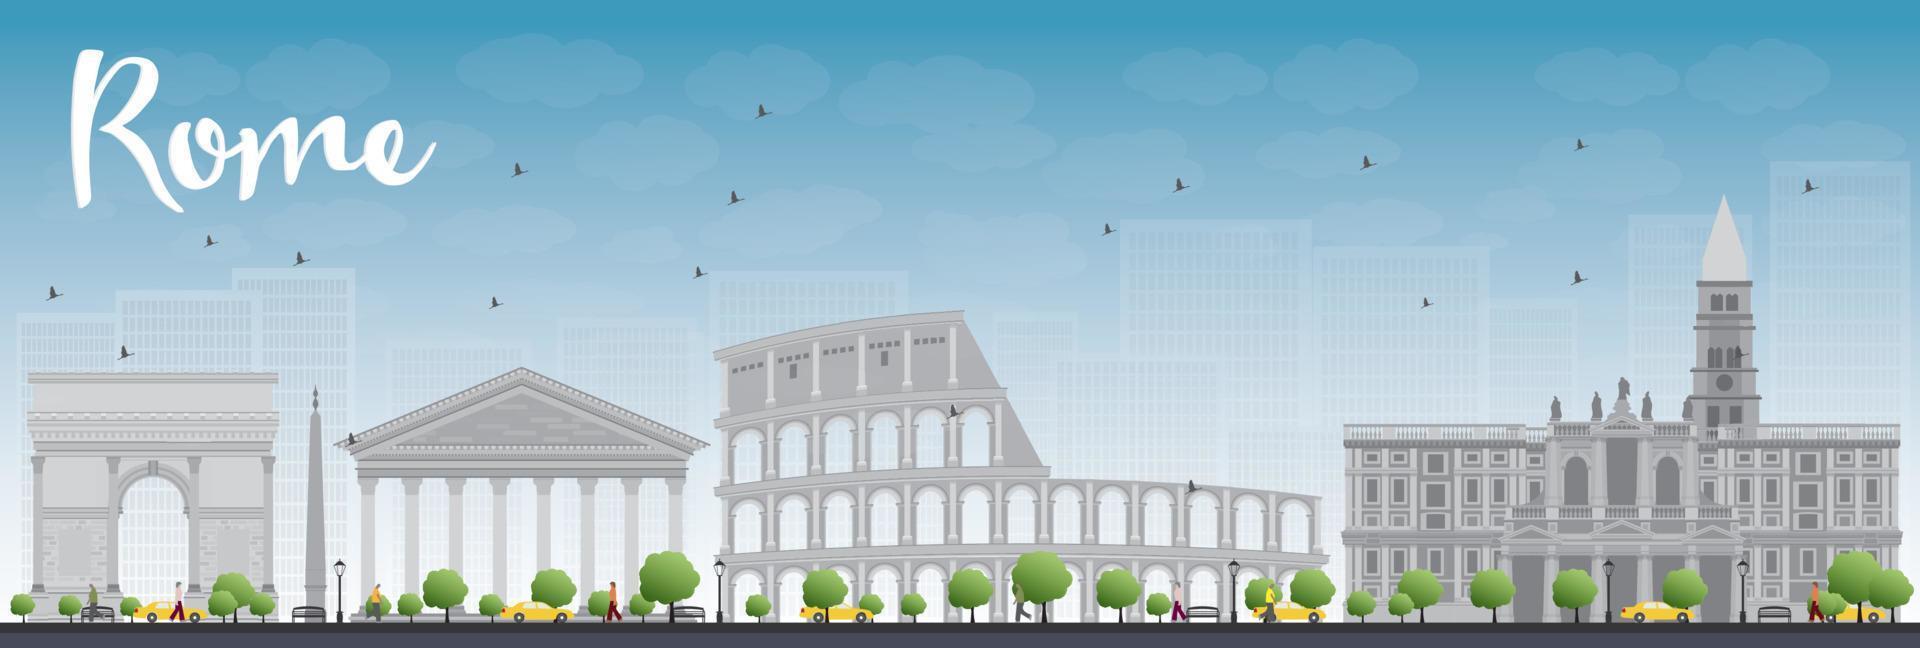 Skyline von Rom mit grauen Wahrzeichen und blauem Himmel vektor